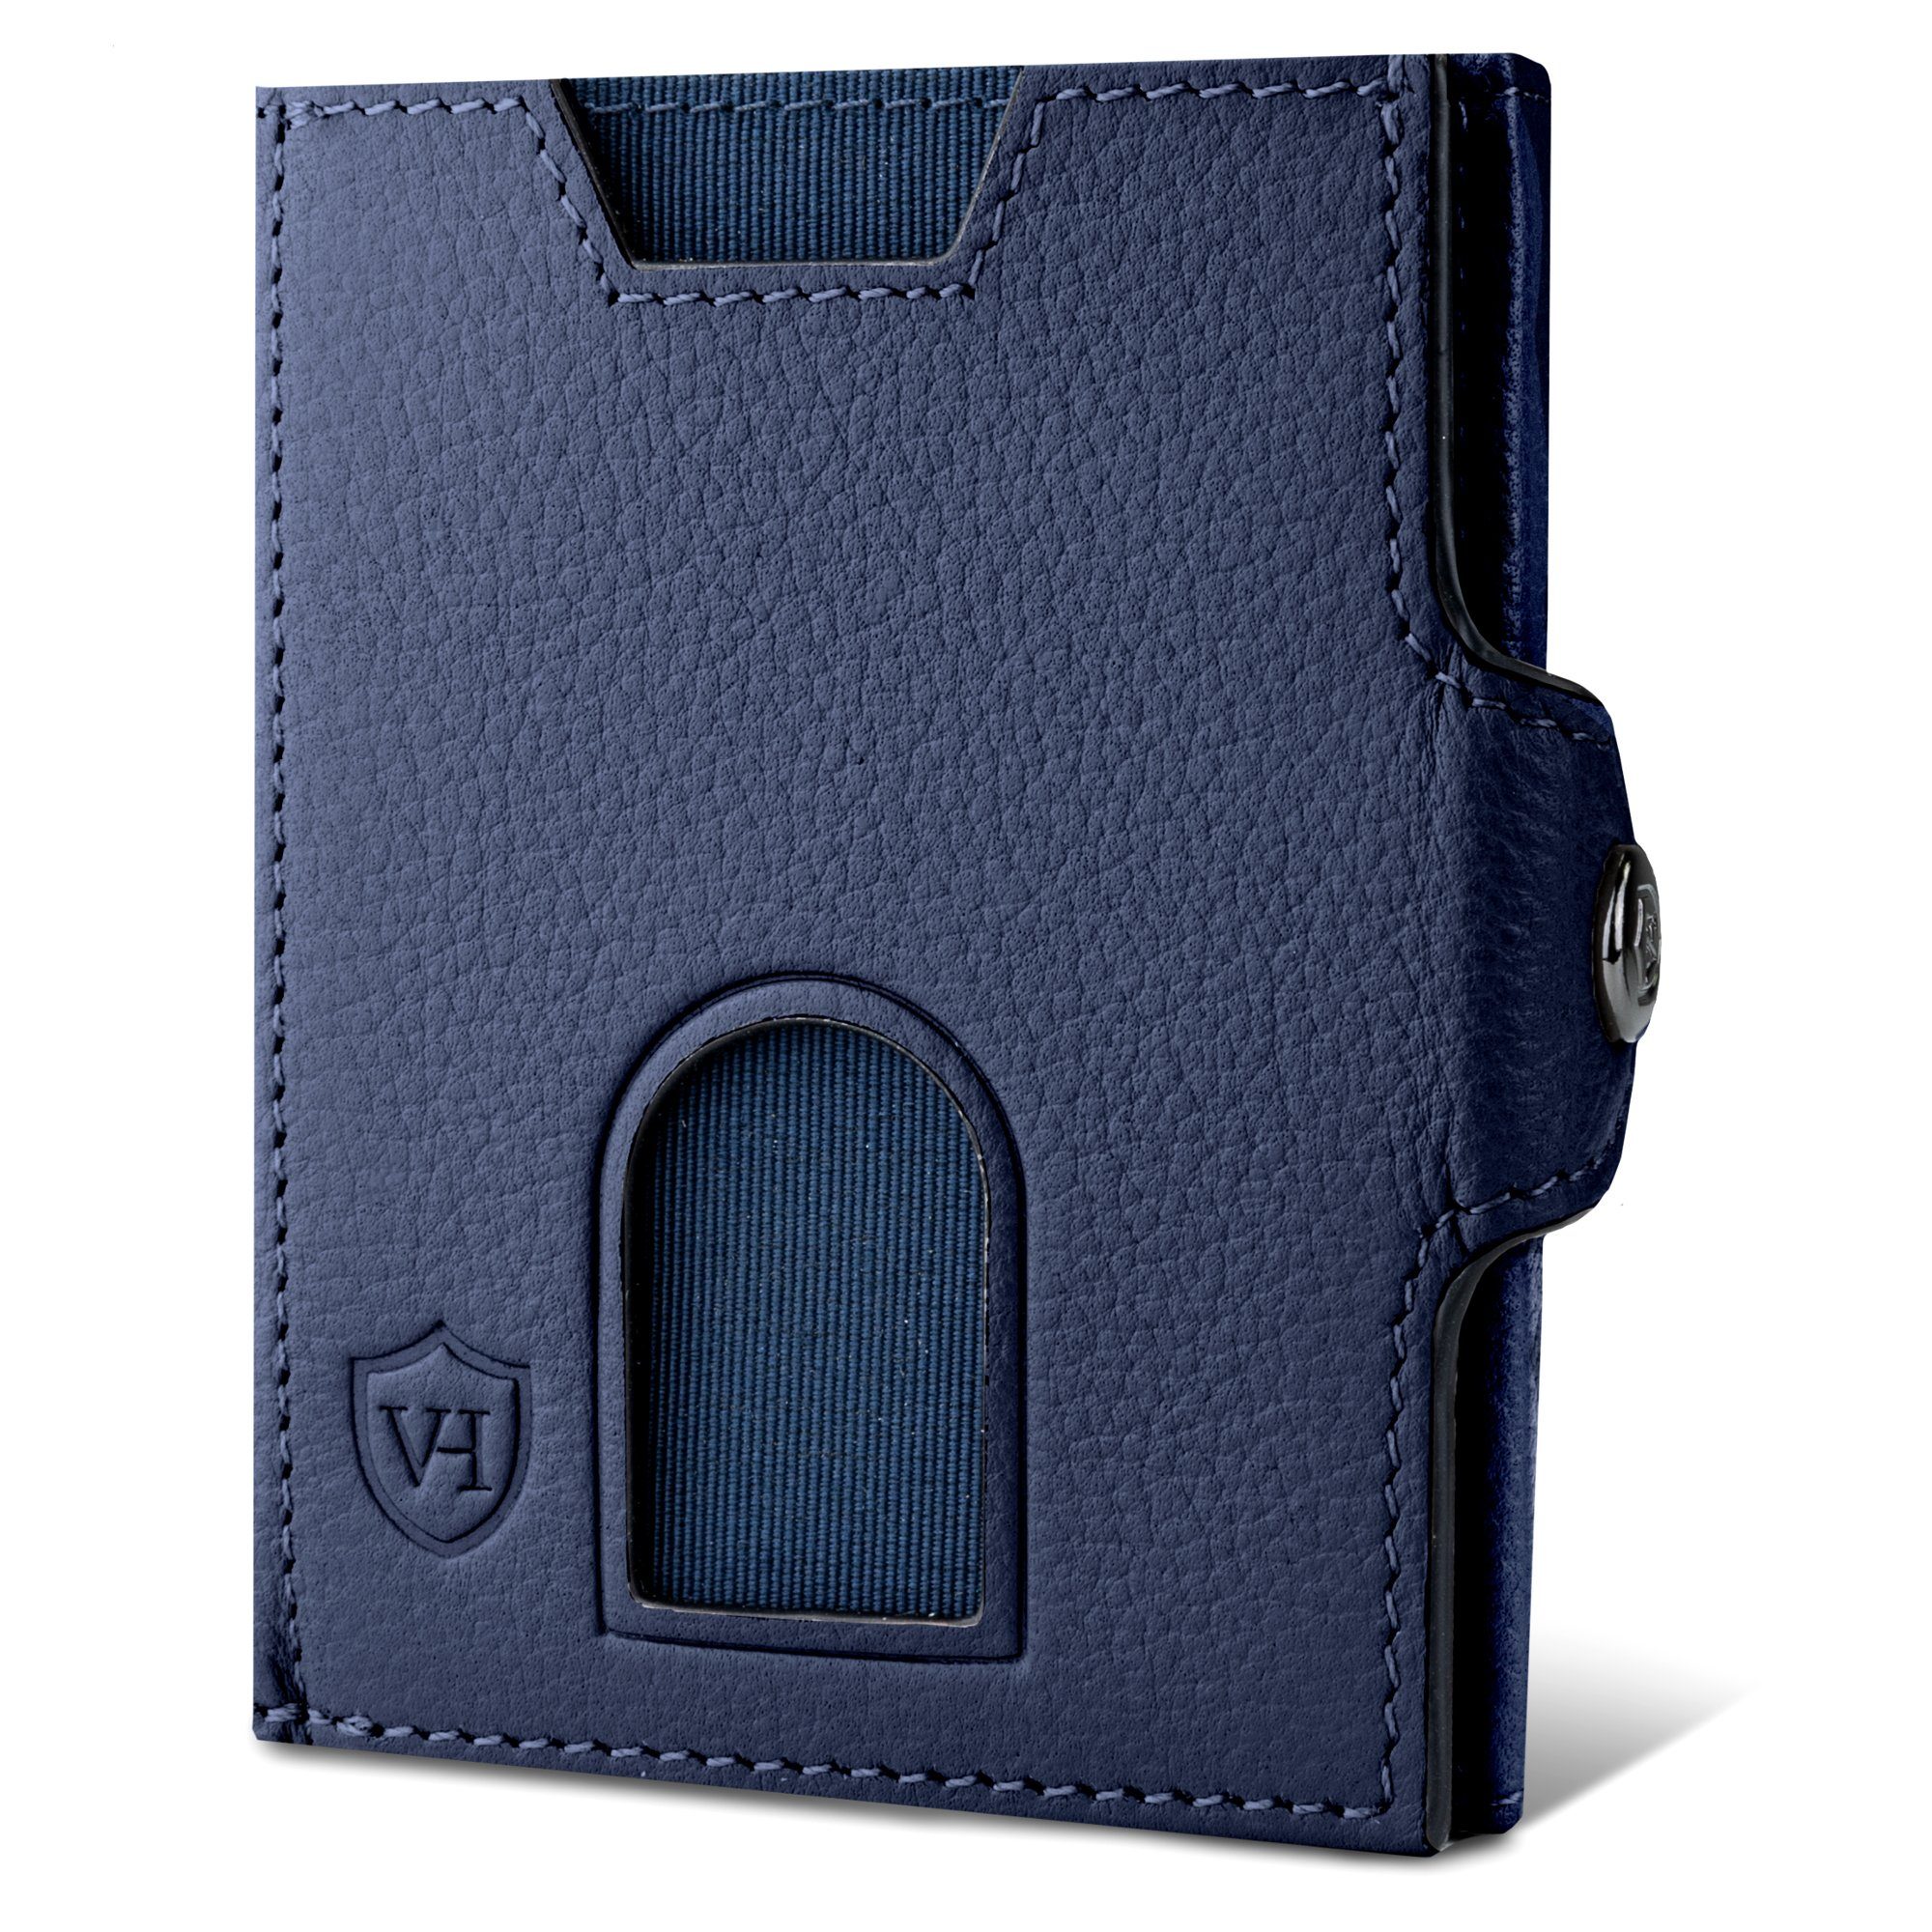 VON HEESEN Geldbörse Whizz Wallet mit 5 Kartenfächer & XL-Münzfach, Slim Wallet Geldbeutel Portemonnaie inkl. RFID-Schutz & Geschenkbox Blau